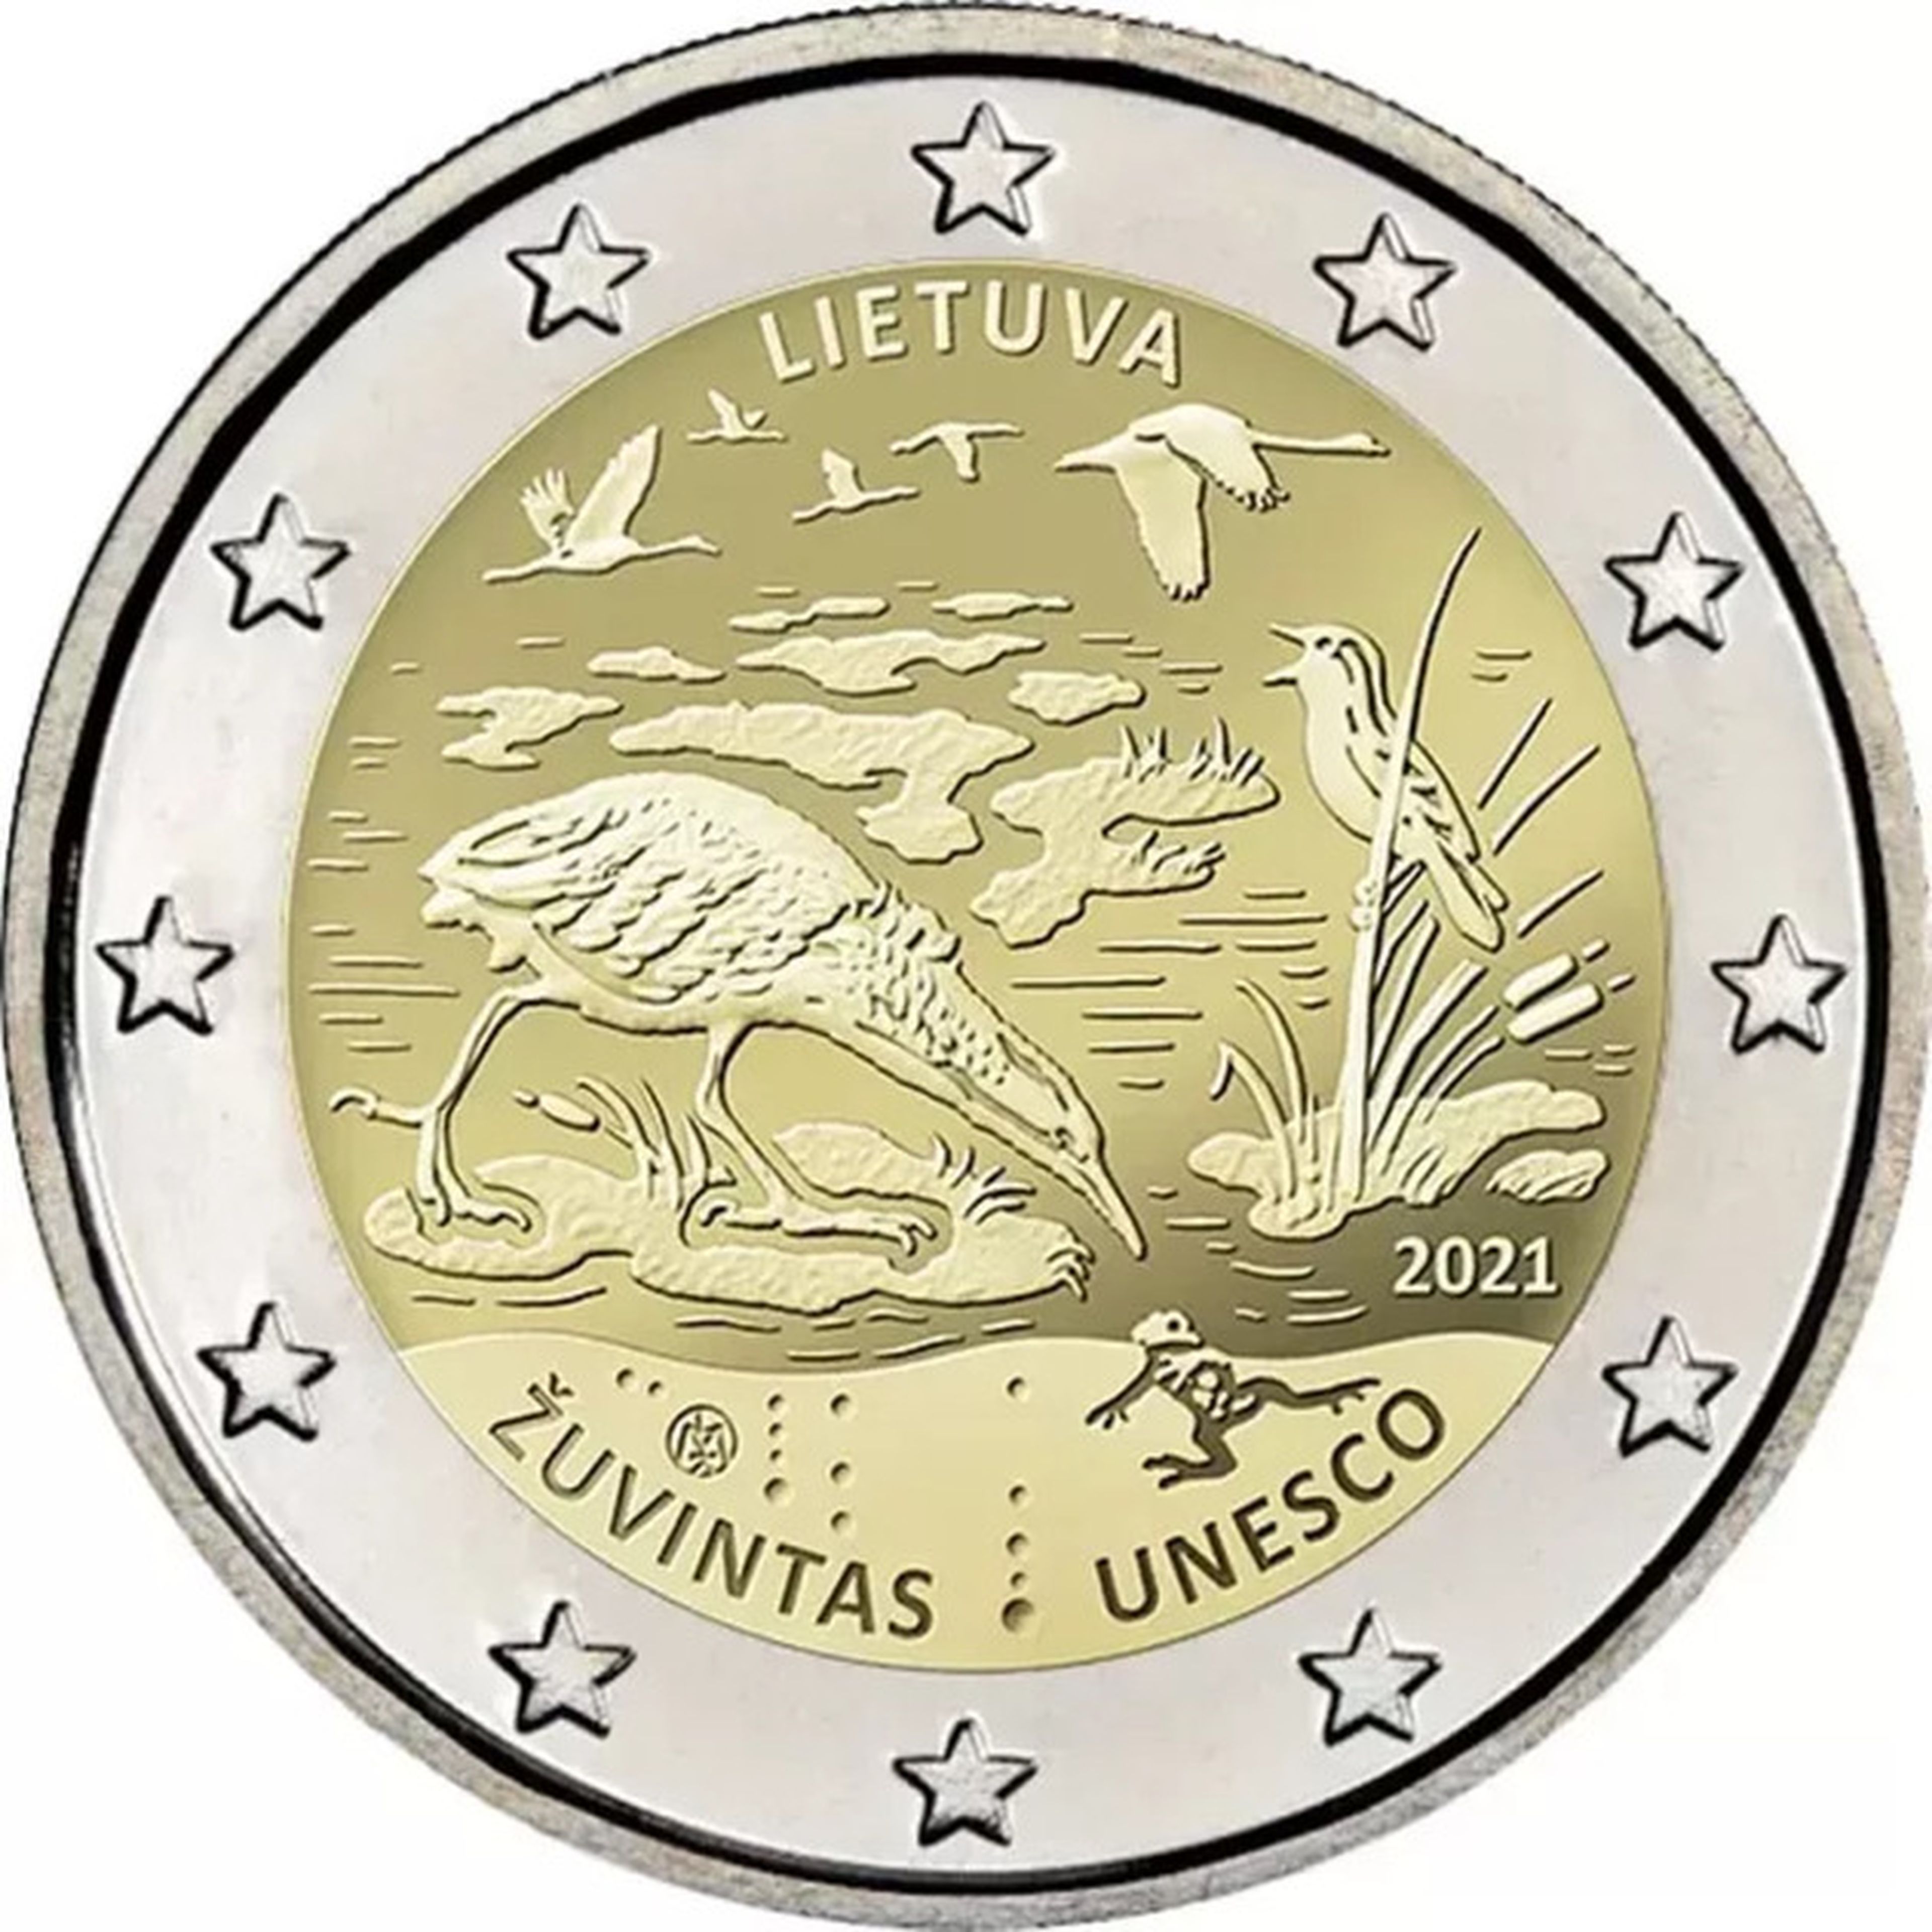 Moneda de 2 euros Lituania 2021, Reserva de la Biosfera de Zuvintas